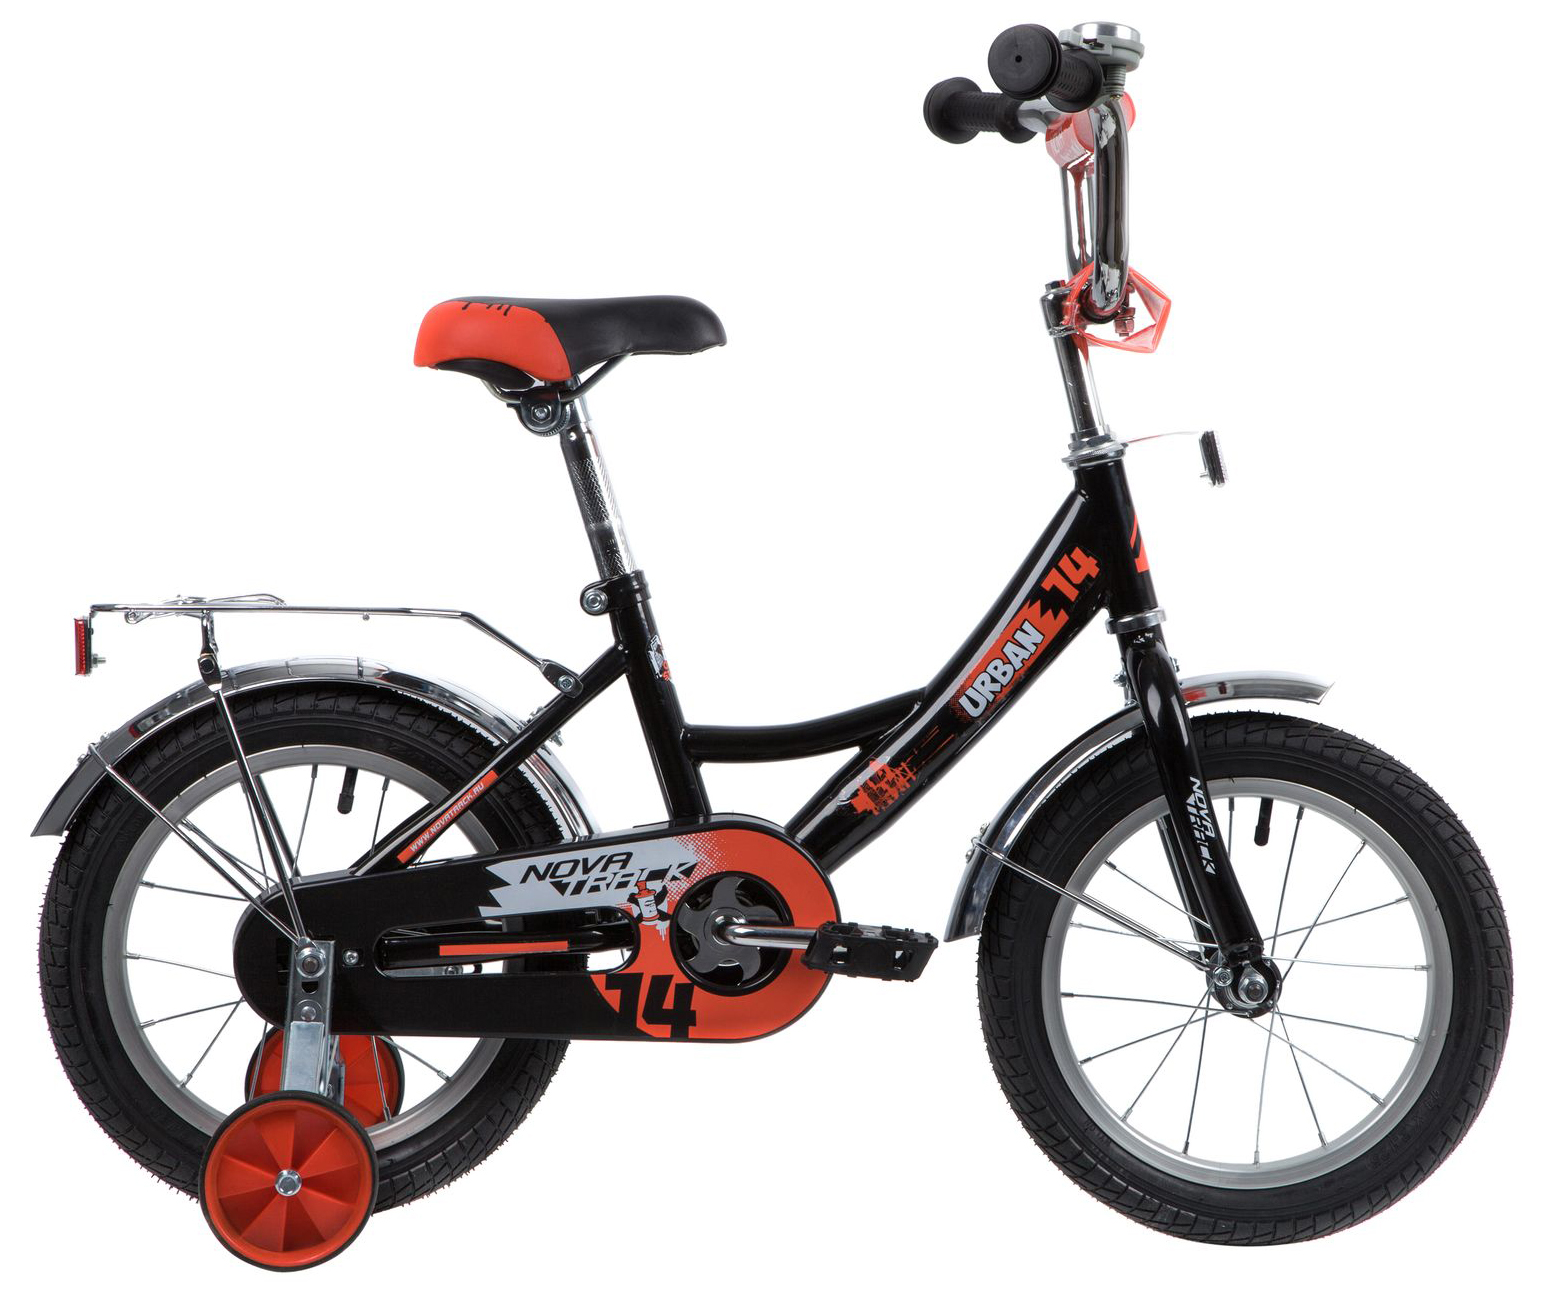  Отзывы о Детском велосипеде Novatrack Urban 16 2020